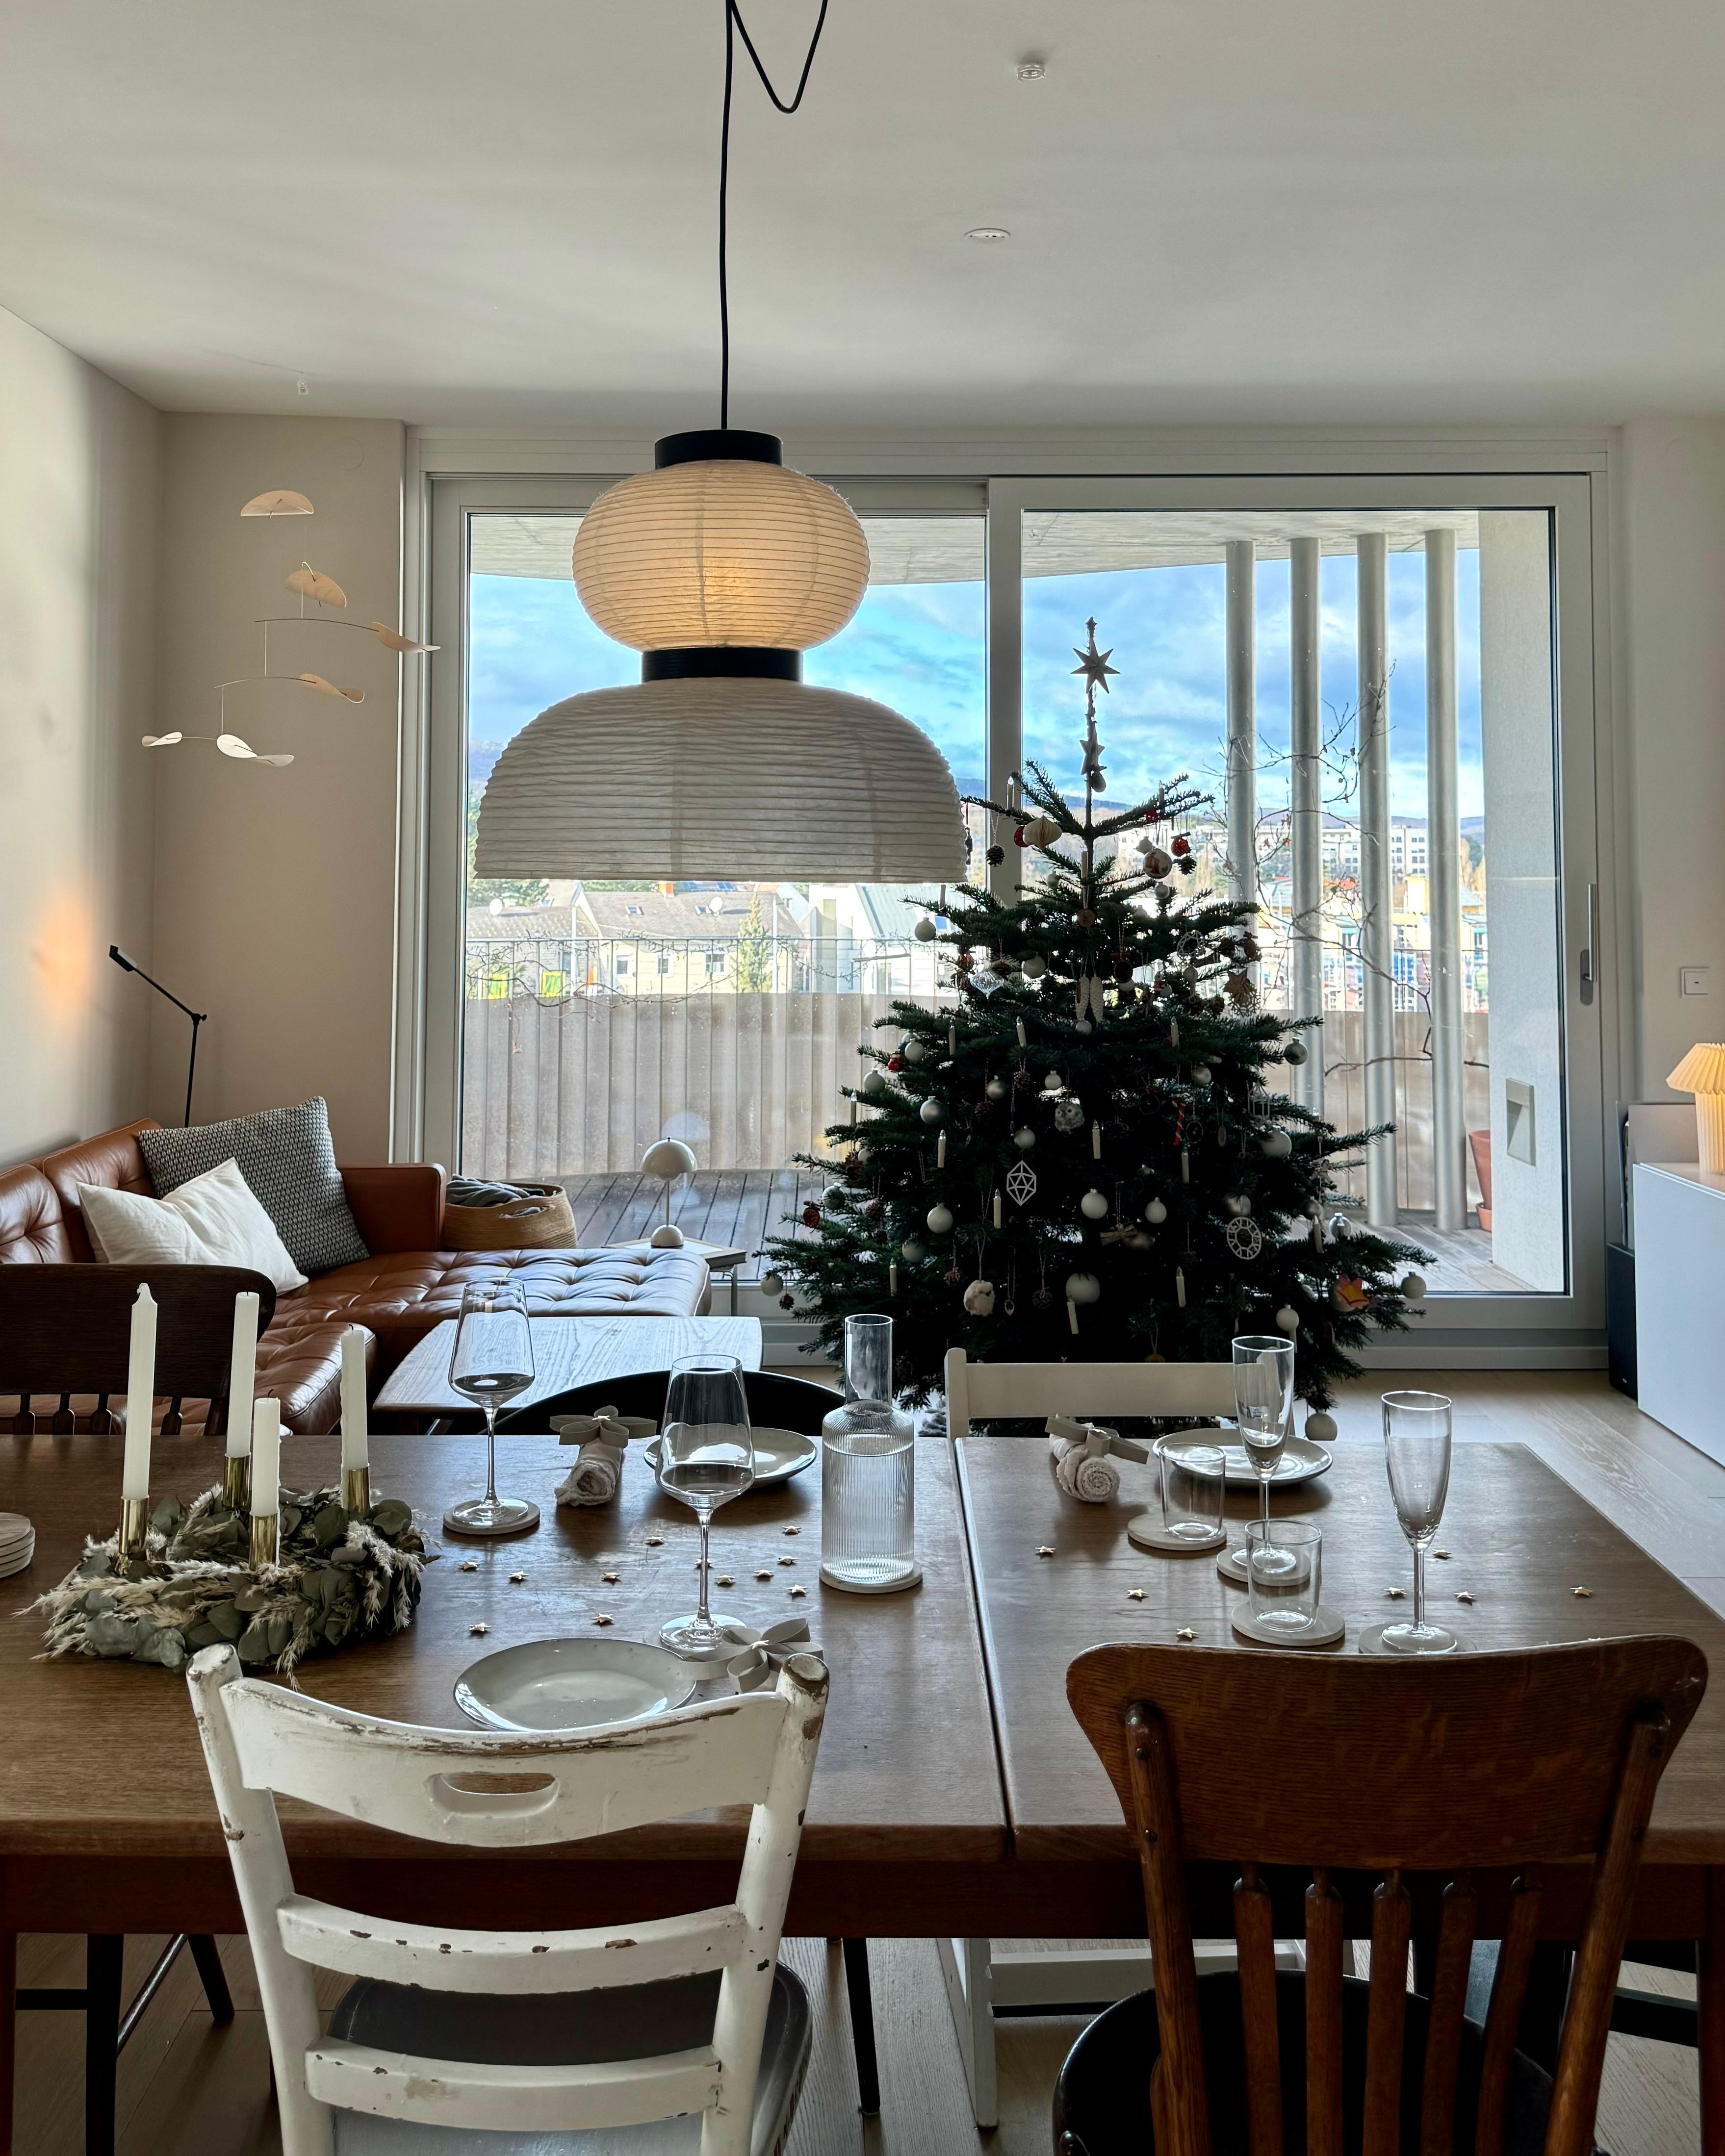 Die Kinder haben gebastelt und den Tisch gedeckt 🤍
#esstisch #wohnzimmer #weihnachtsbaum #christbaum #aussicht #weihnachten